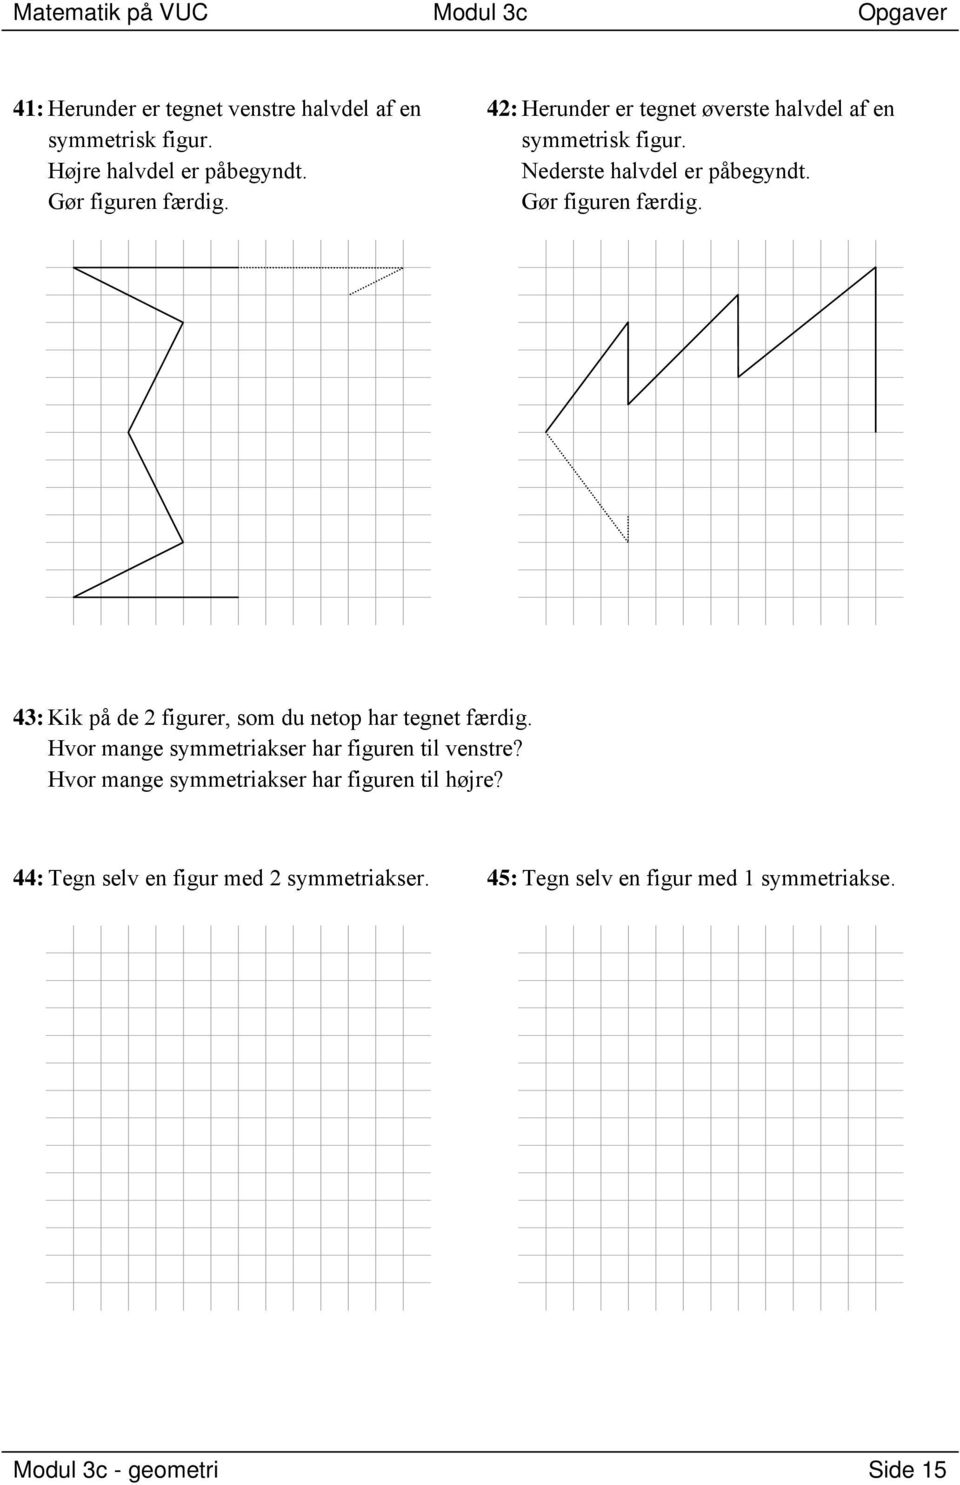 Matematik på VUC. Modul 3c geometri. Indholdsfortegnelse - PDF ...